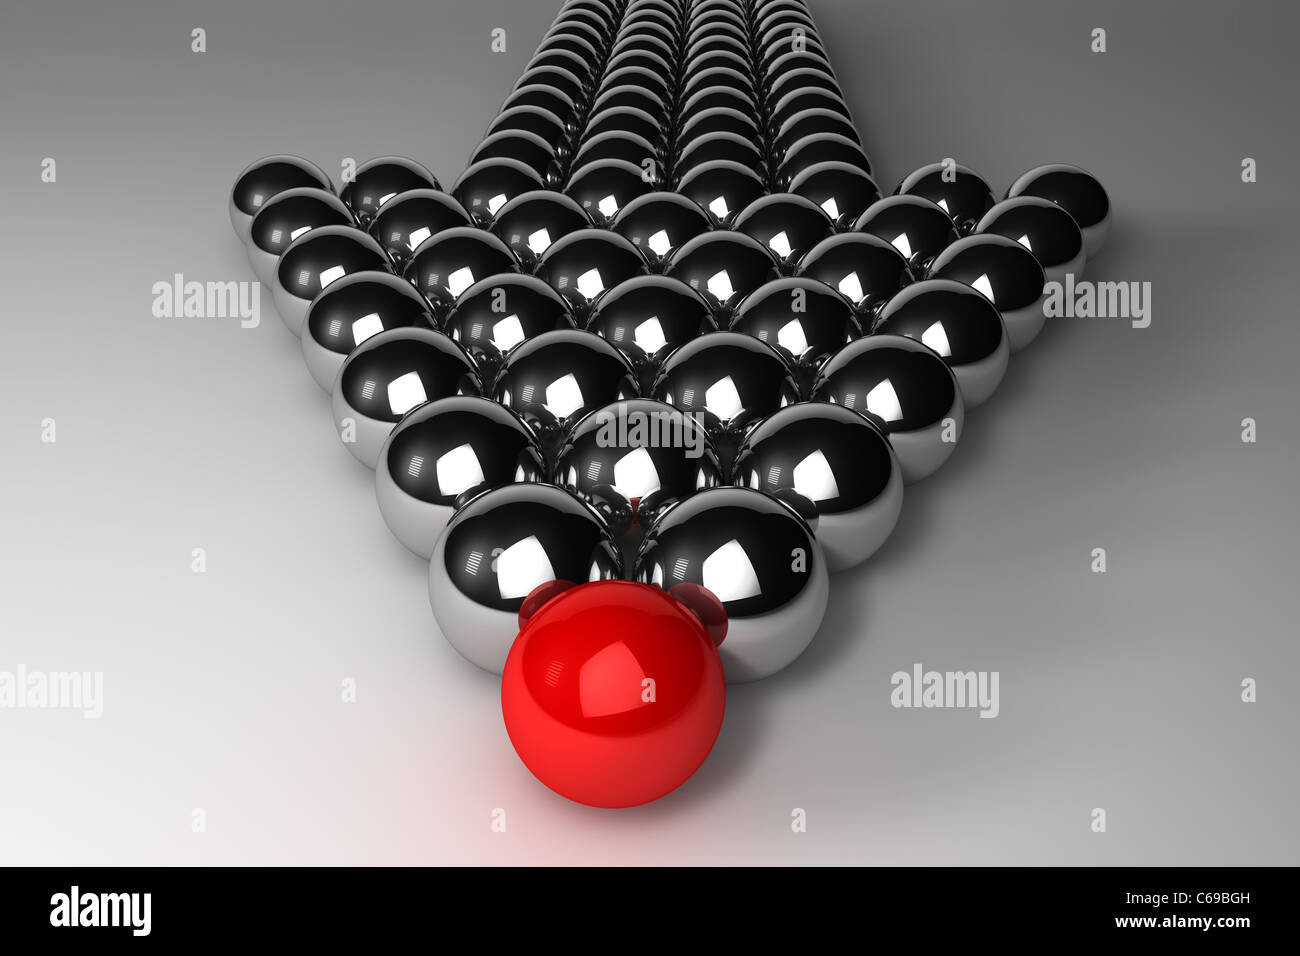 Unico o il concetto di Leadership - sfera rossa sulla parte anteriore Foto Stock